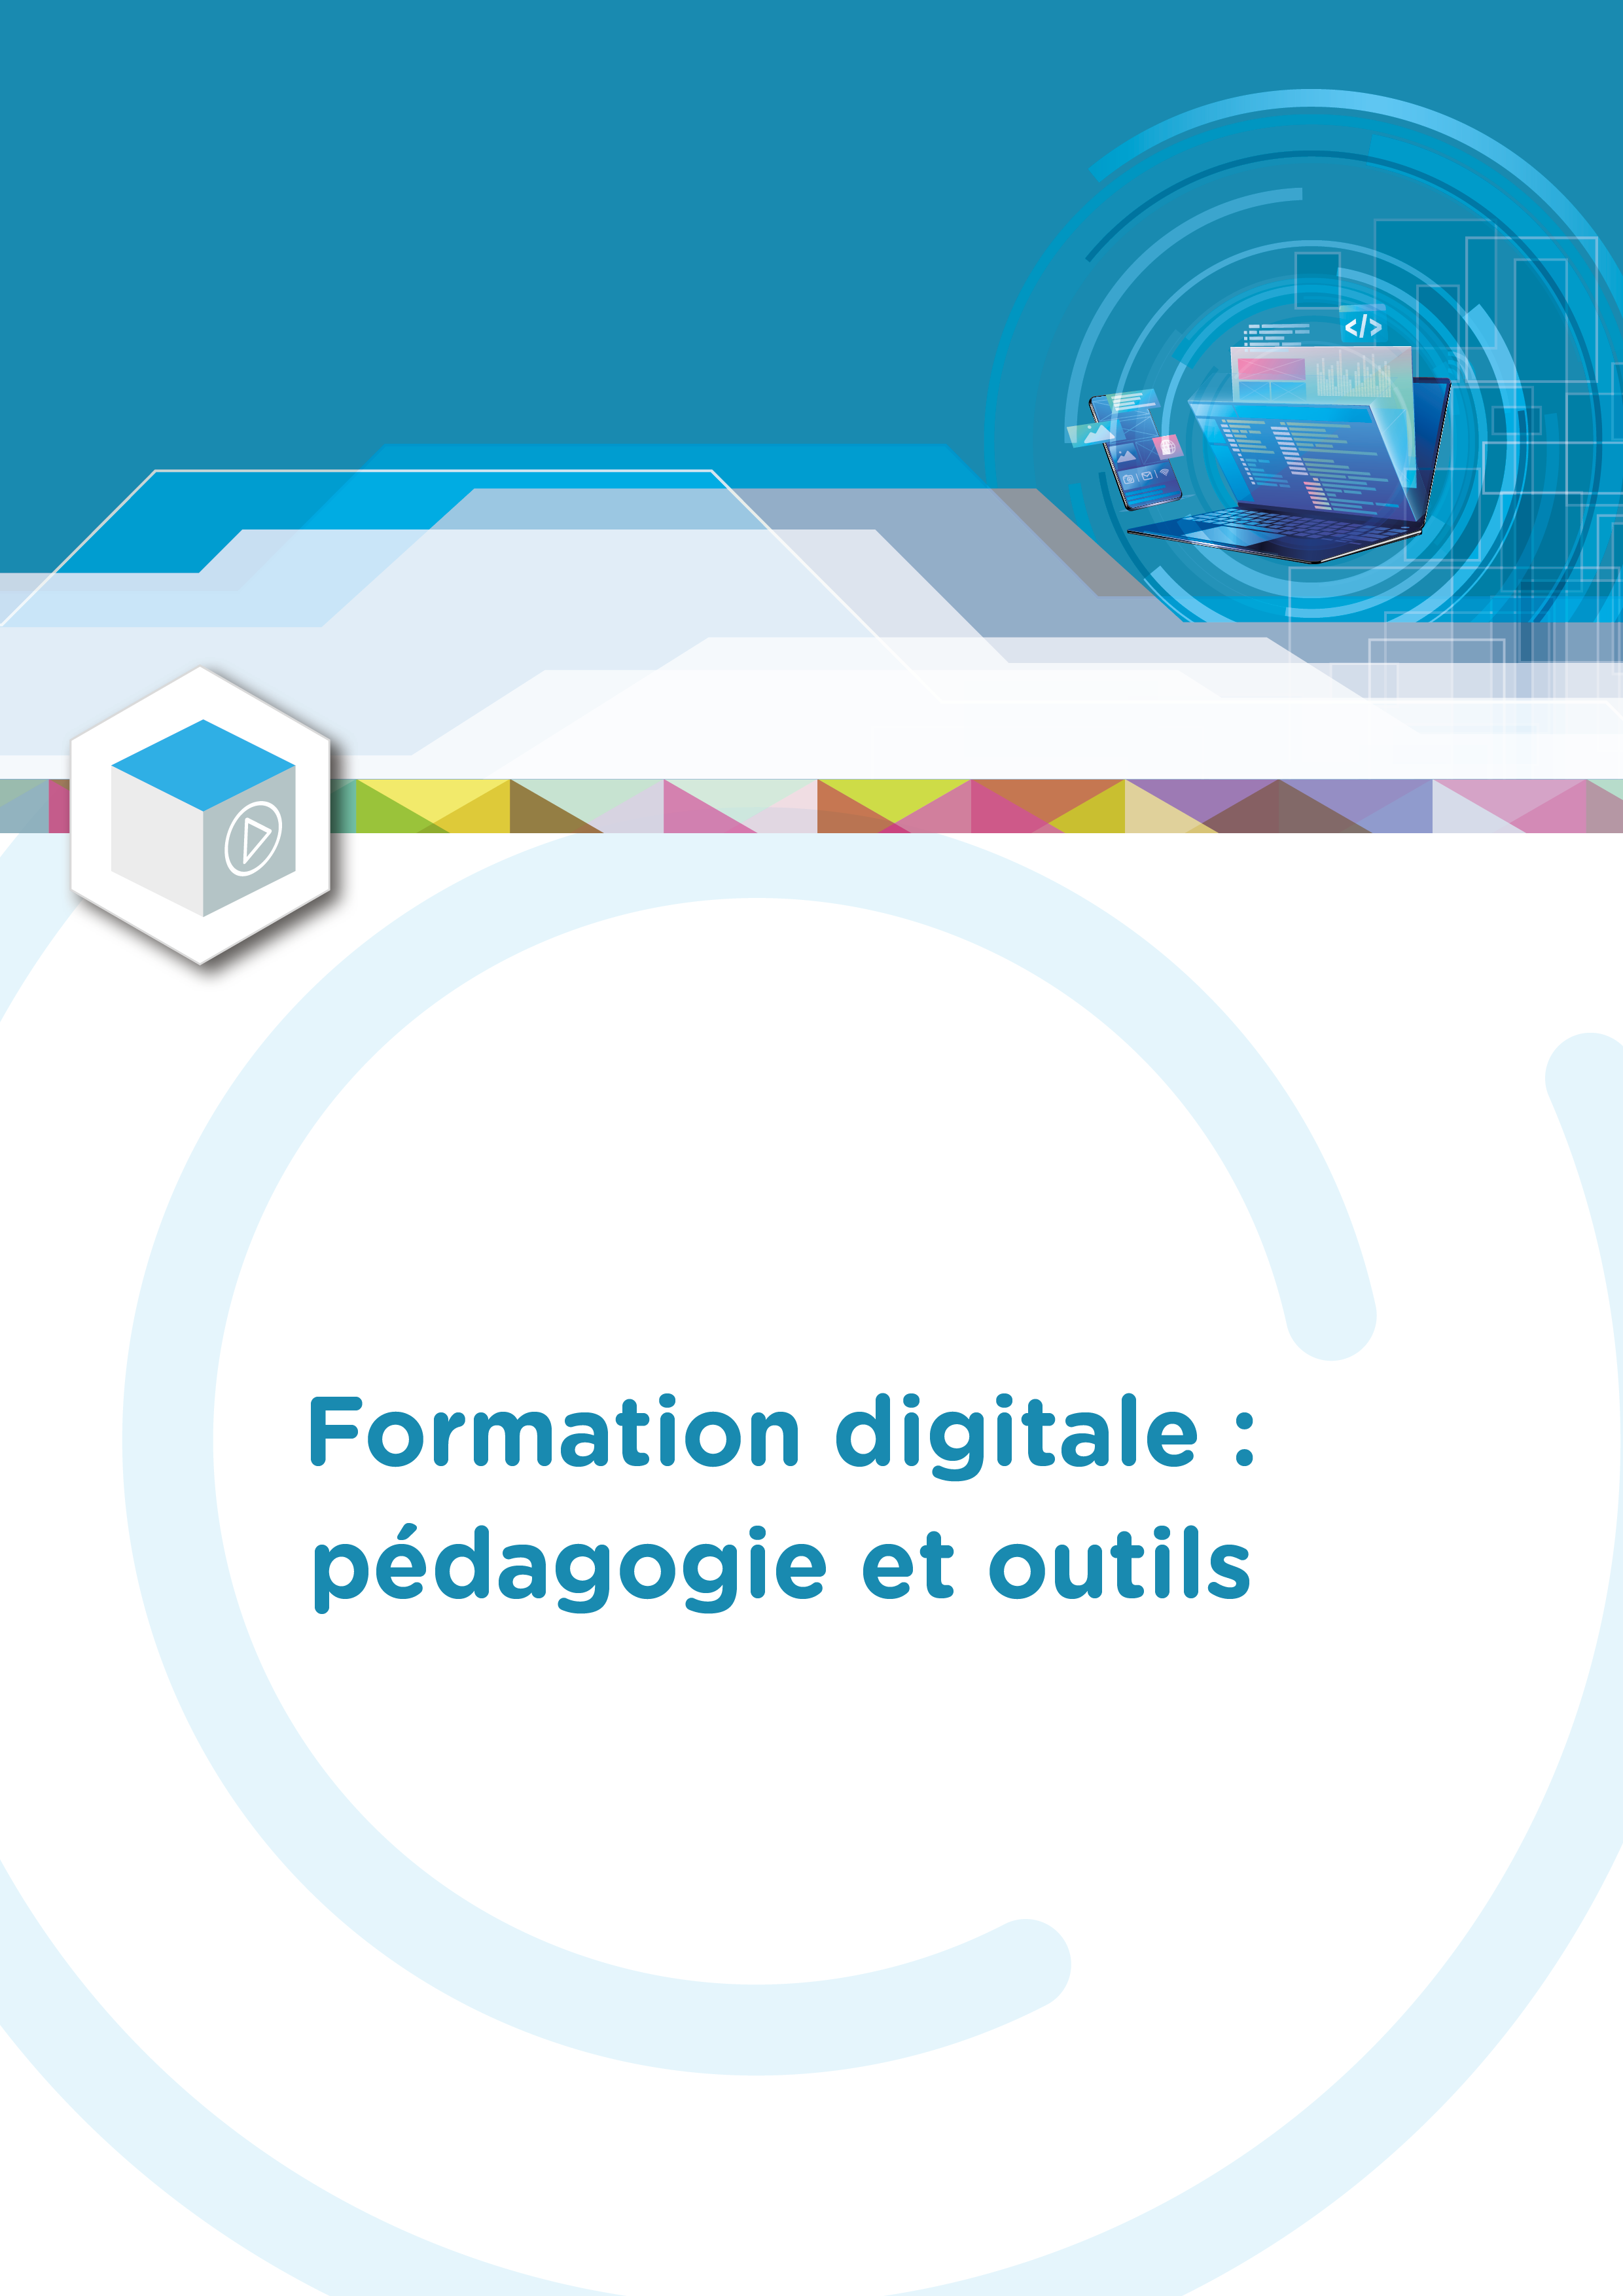 Formation digitale : pédagogie et outils